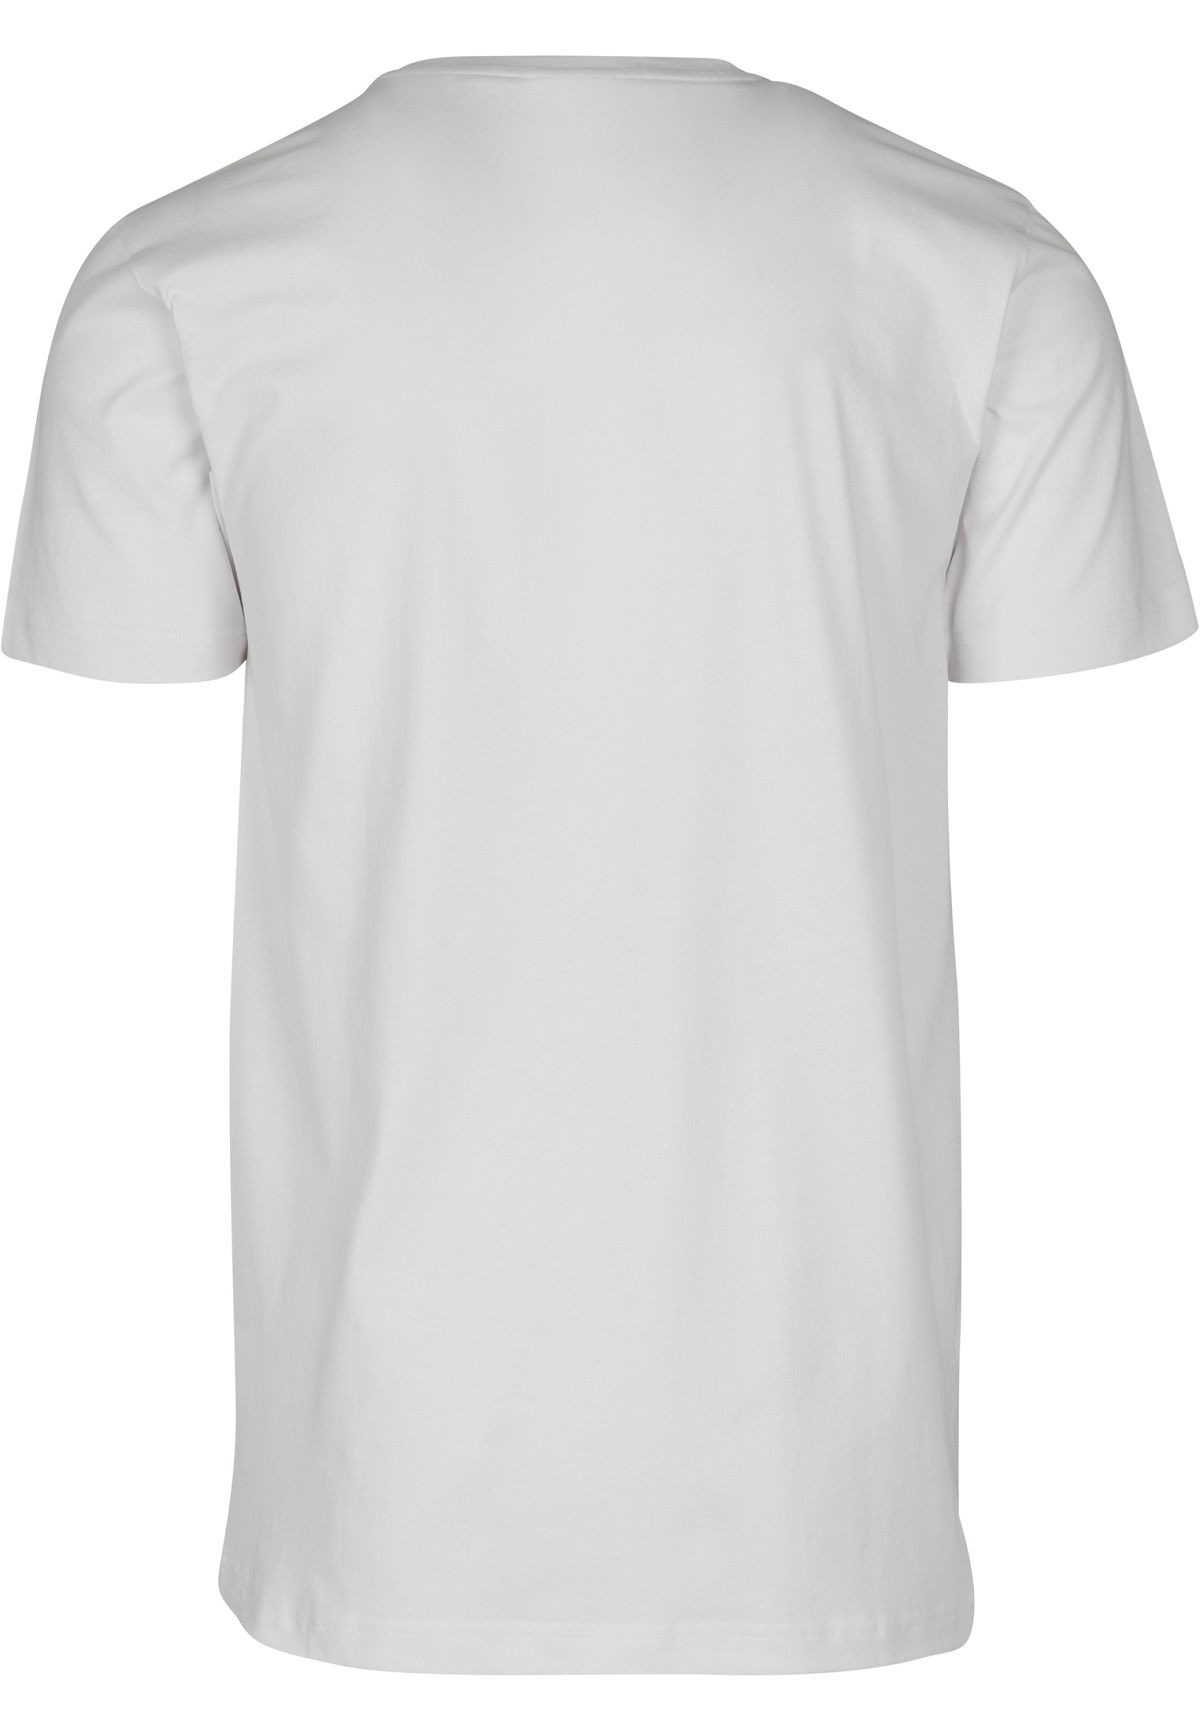 URBAN CLASSICS Basic T-Shirt weiß M